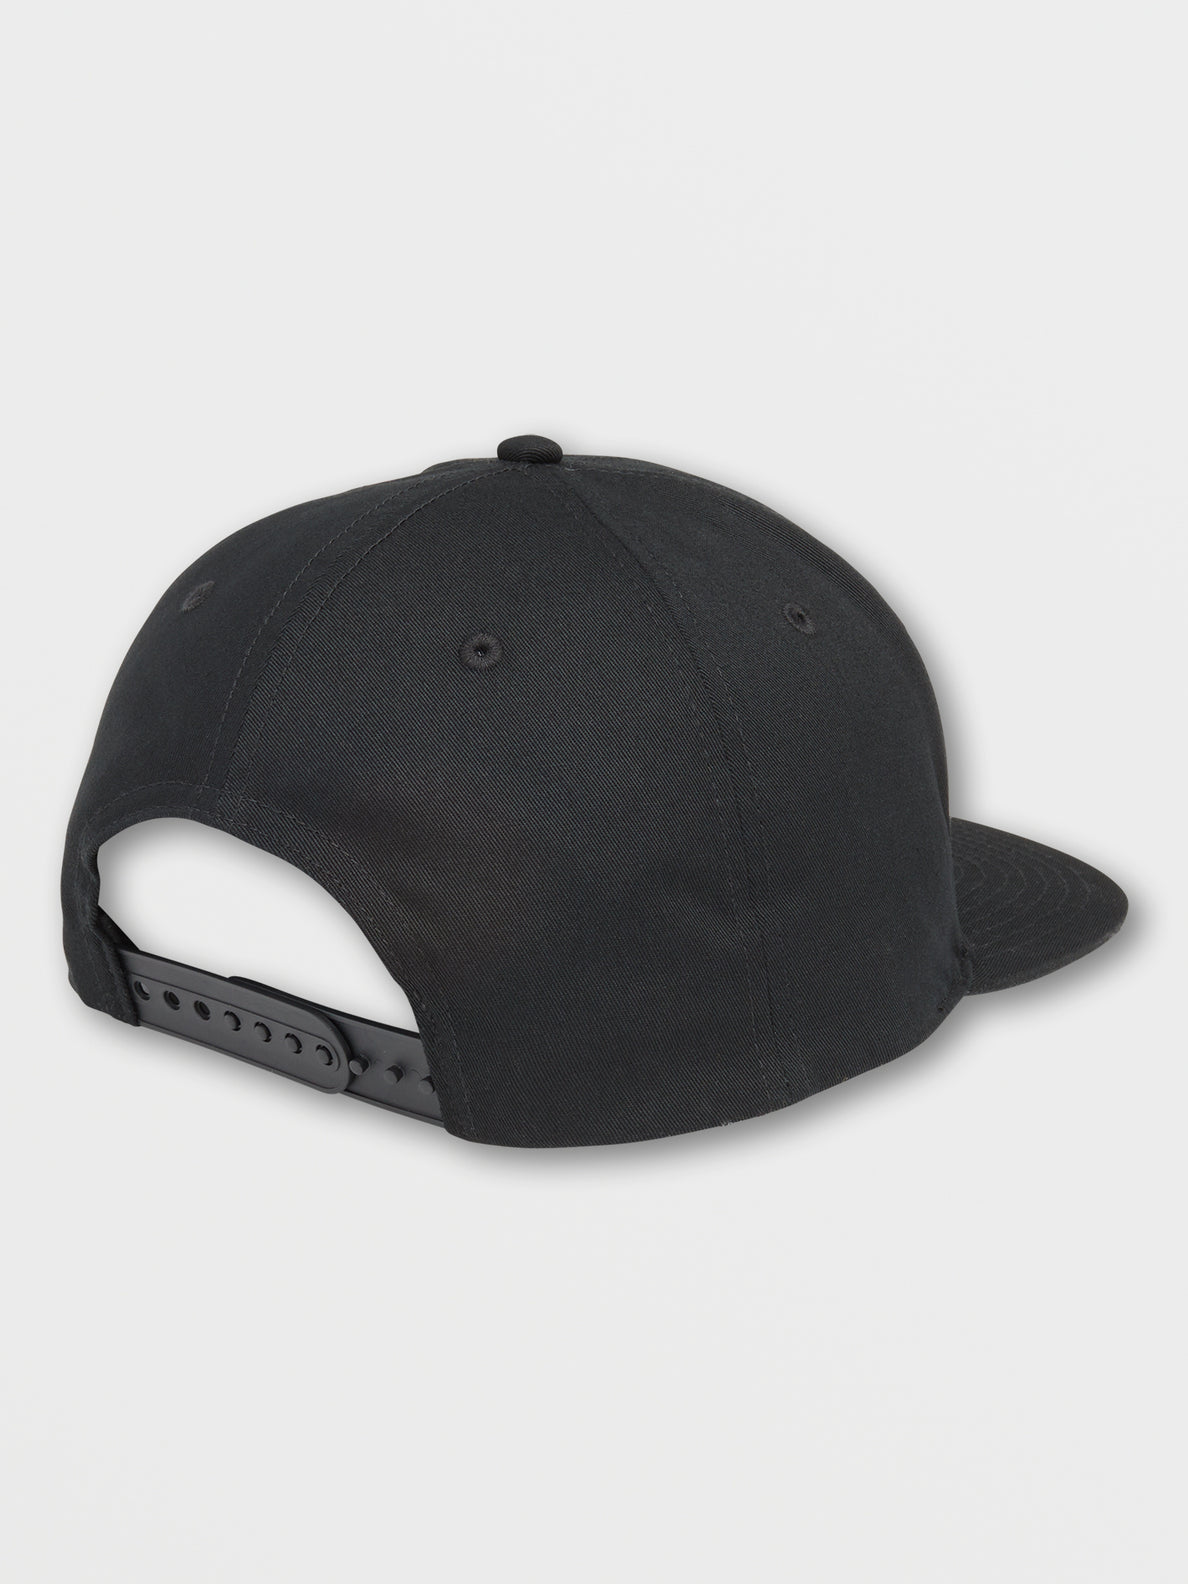 V Square Snapback 2 Hat - Black